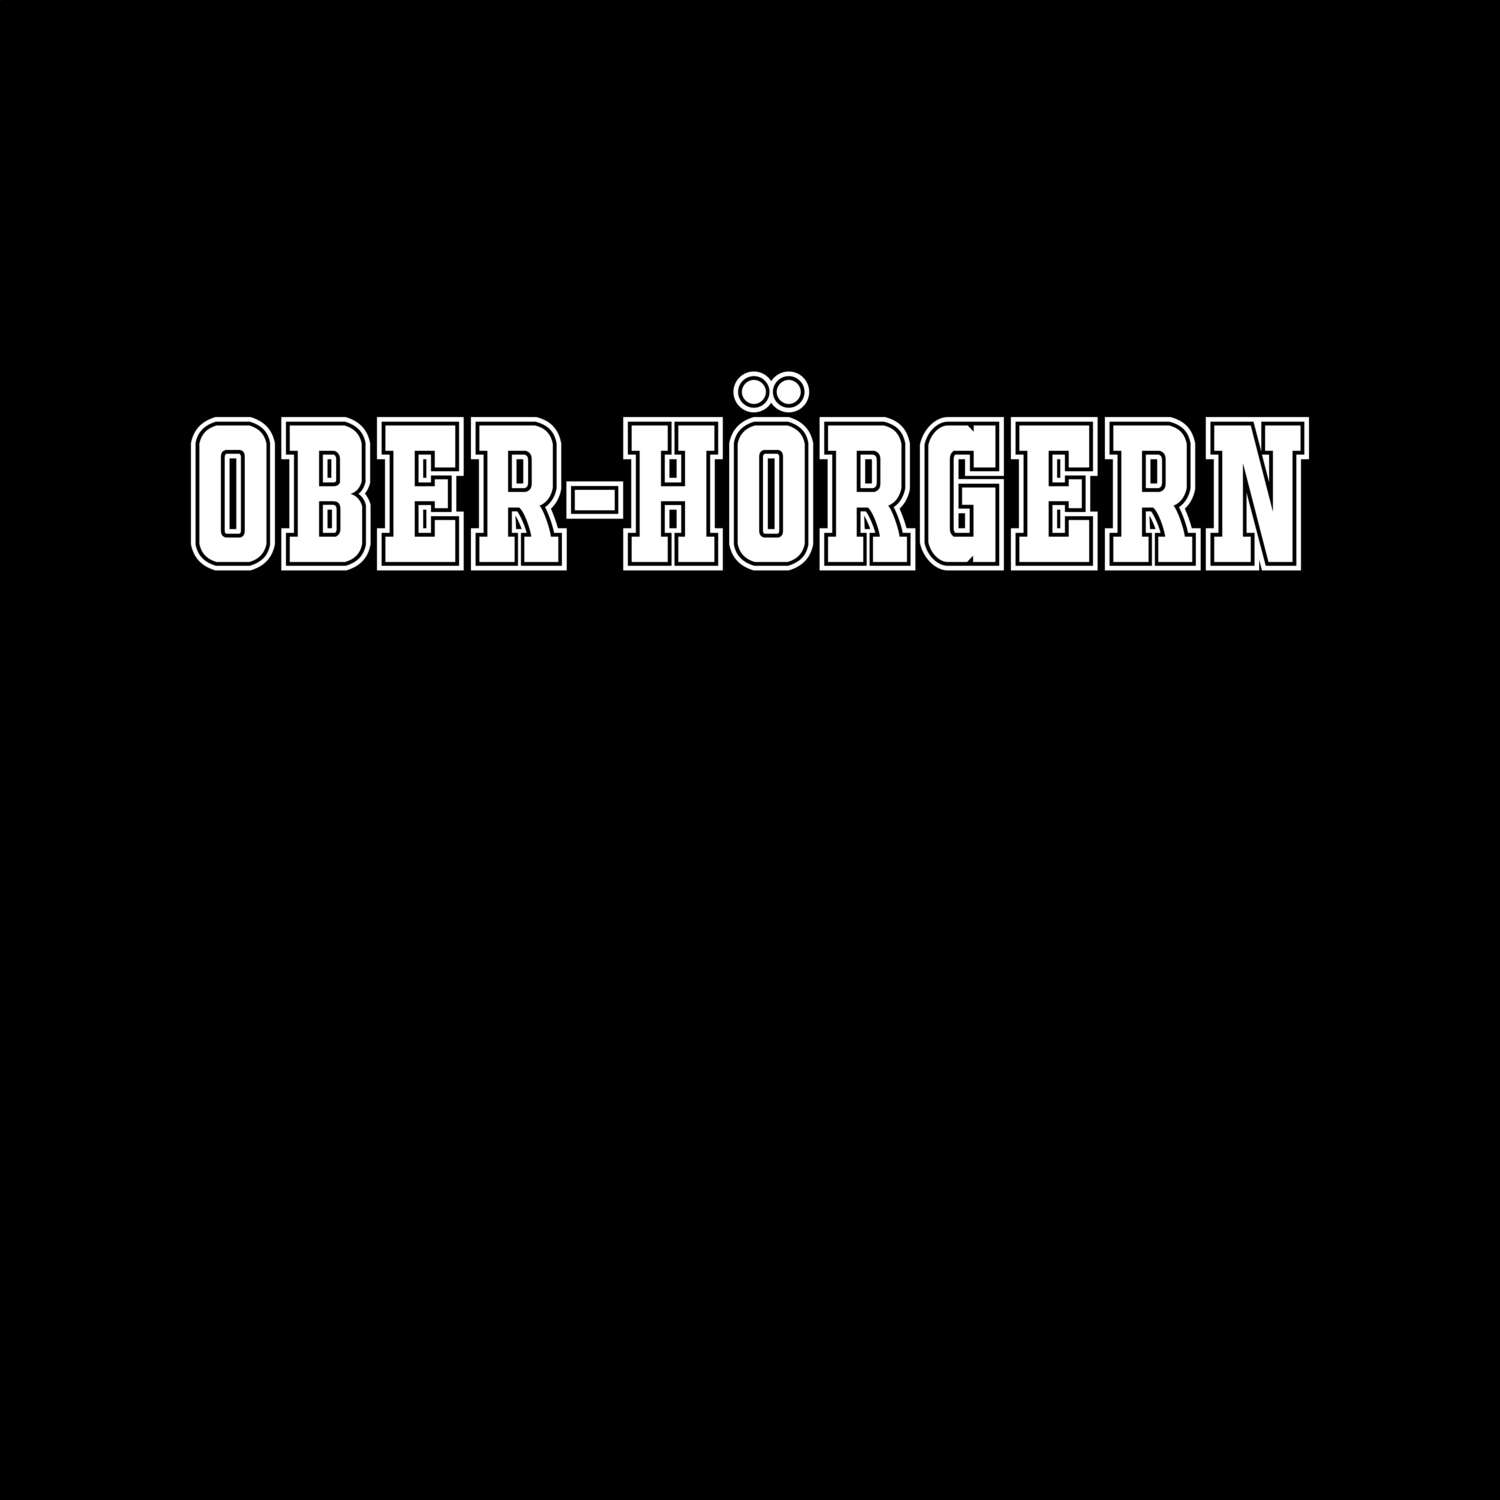 Ober-Hörgern T-Shirt »Classic«